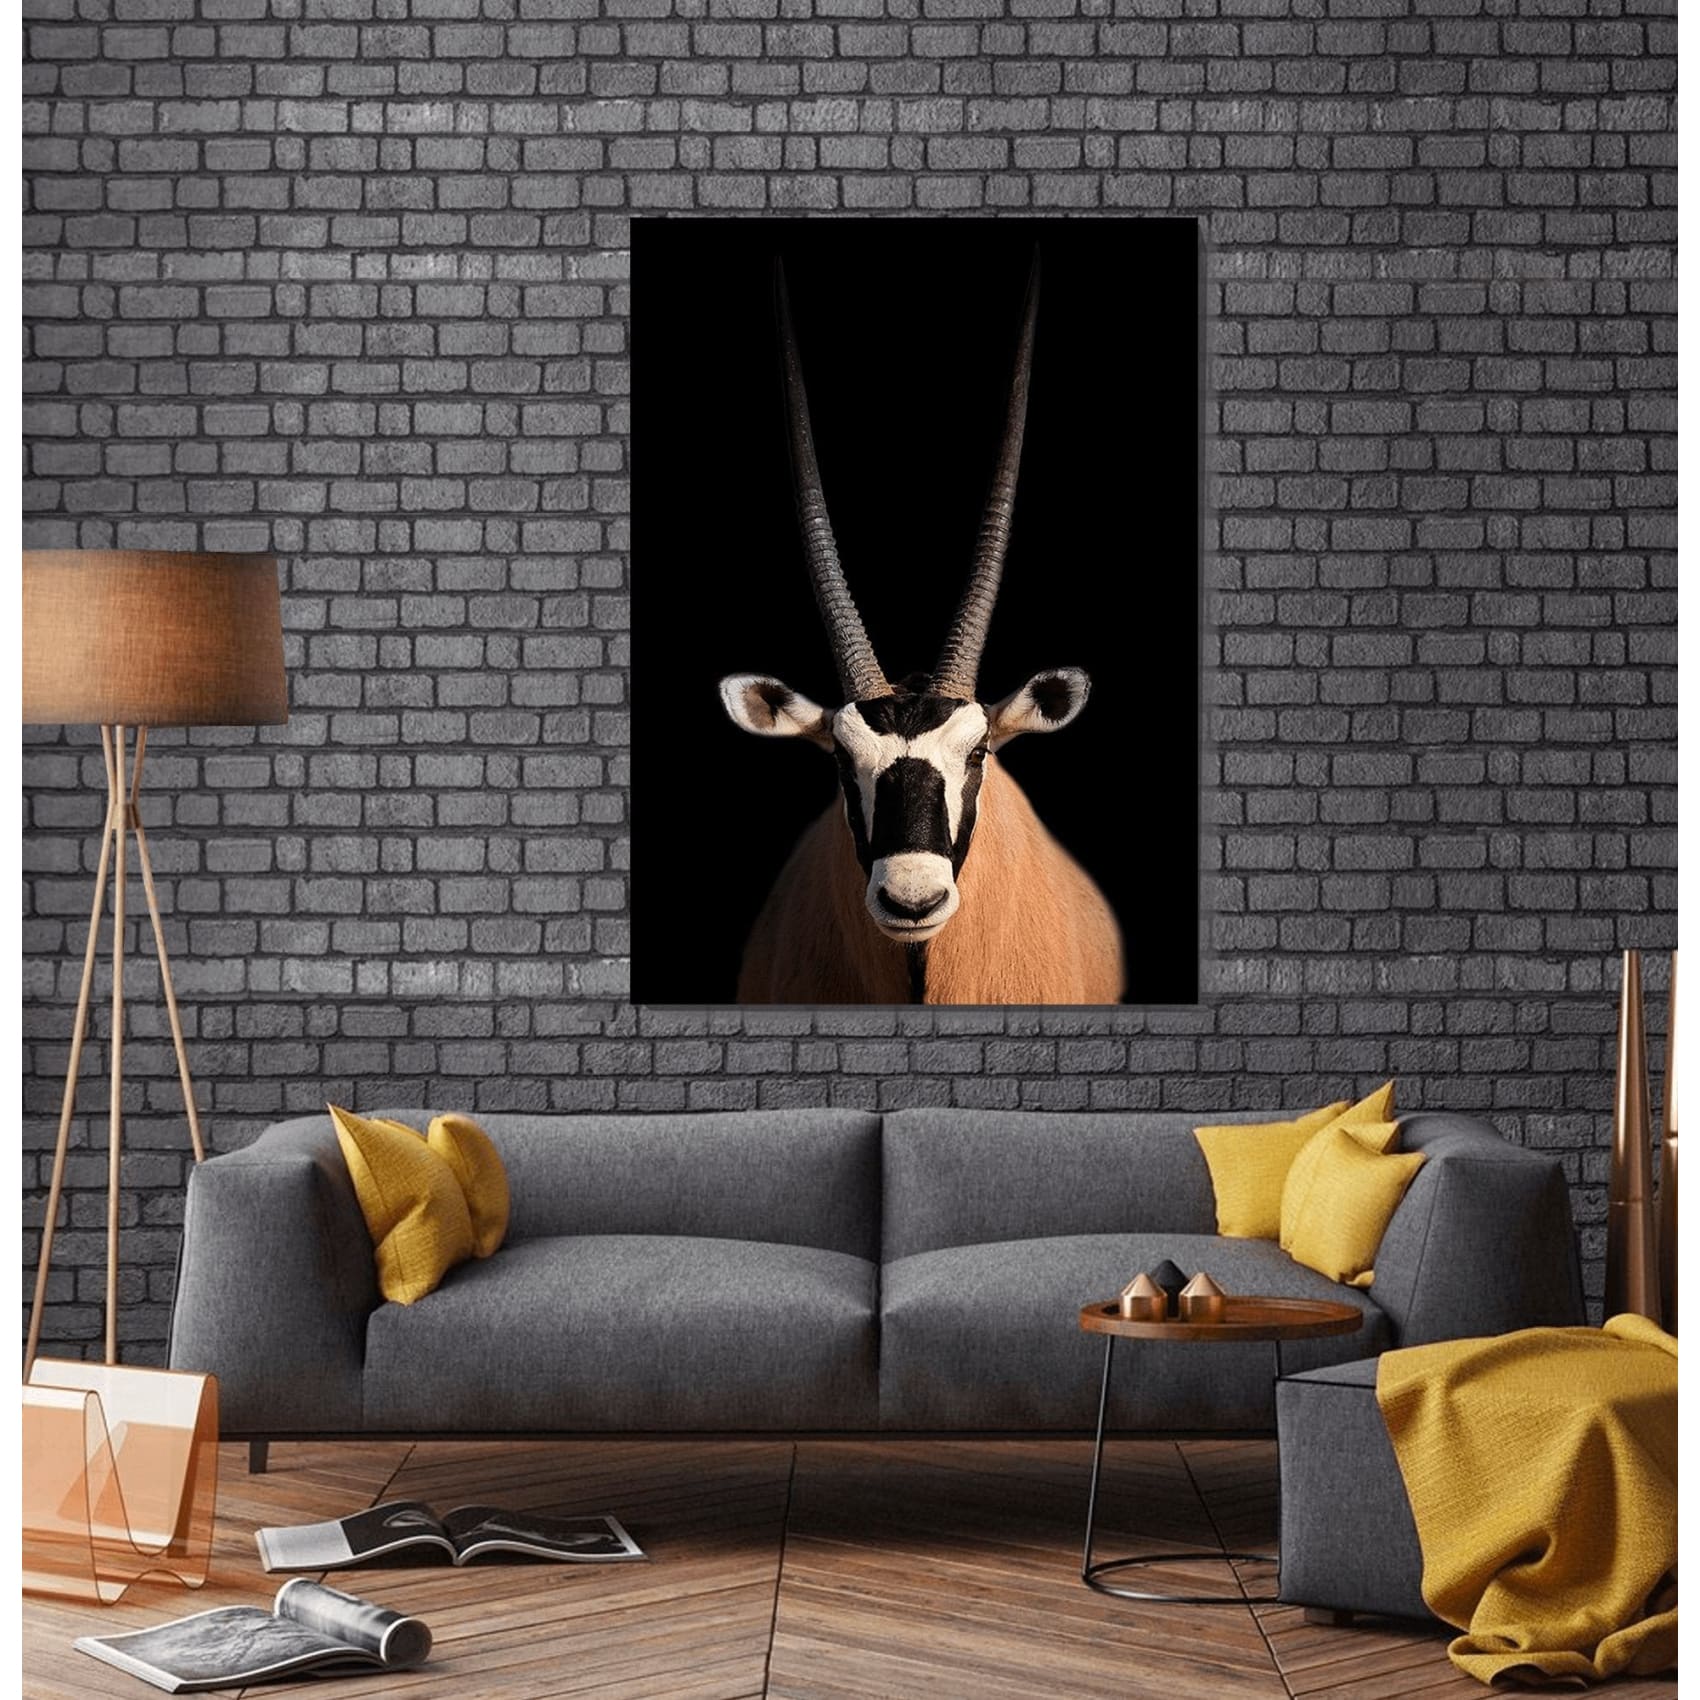 cuadro decorativo, decoración, sala, estudio, habitación, animal, oryx